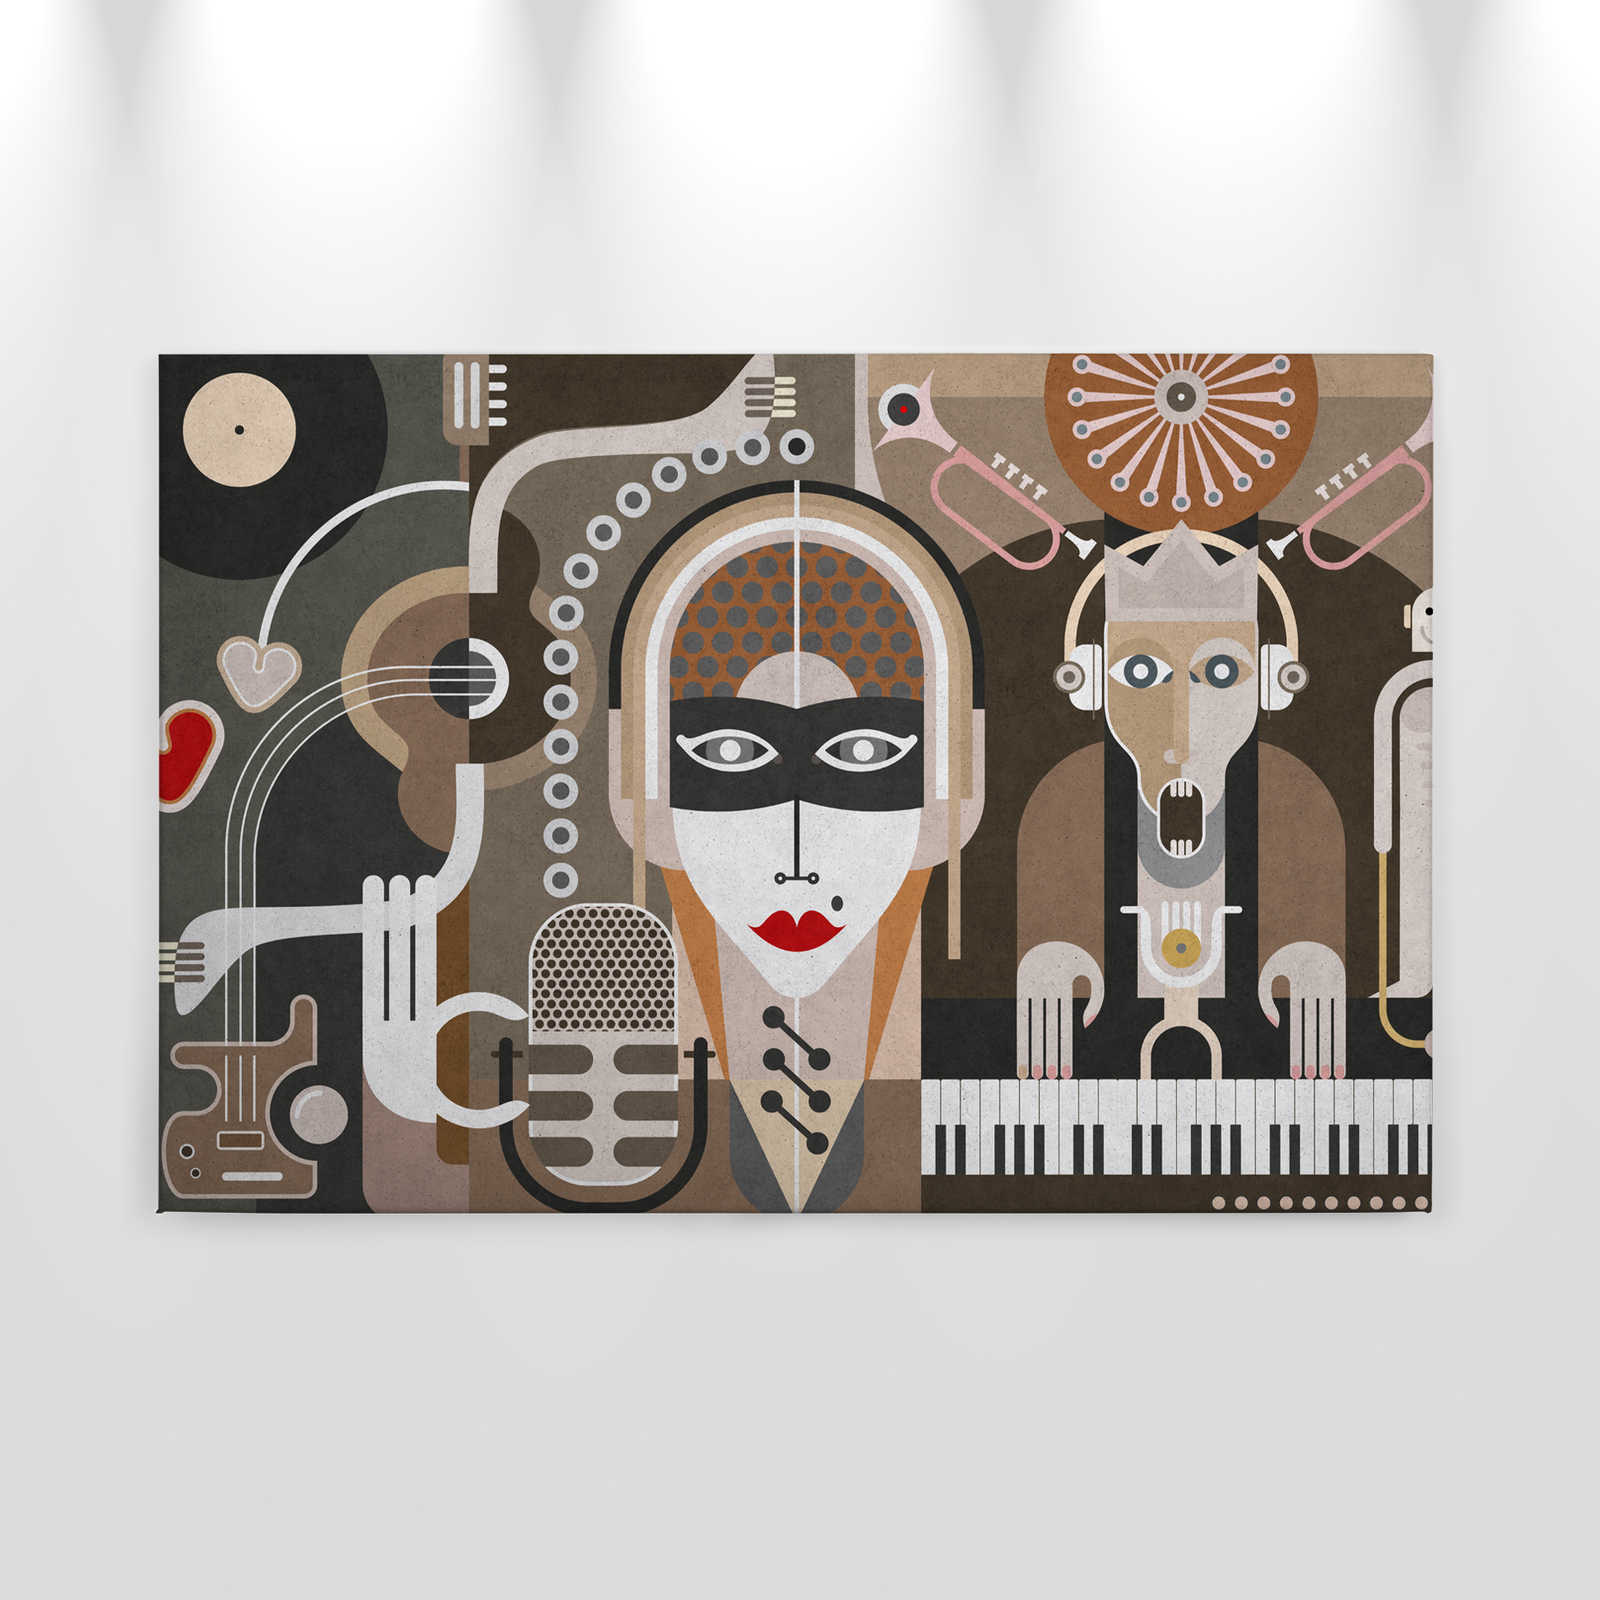             Wall of sound3 - Abstract Canvas Schilderij met gezichten - Strukturen beton - 0.90 m x 0.60 m
        